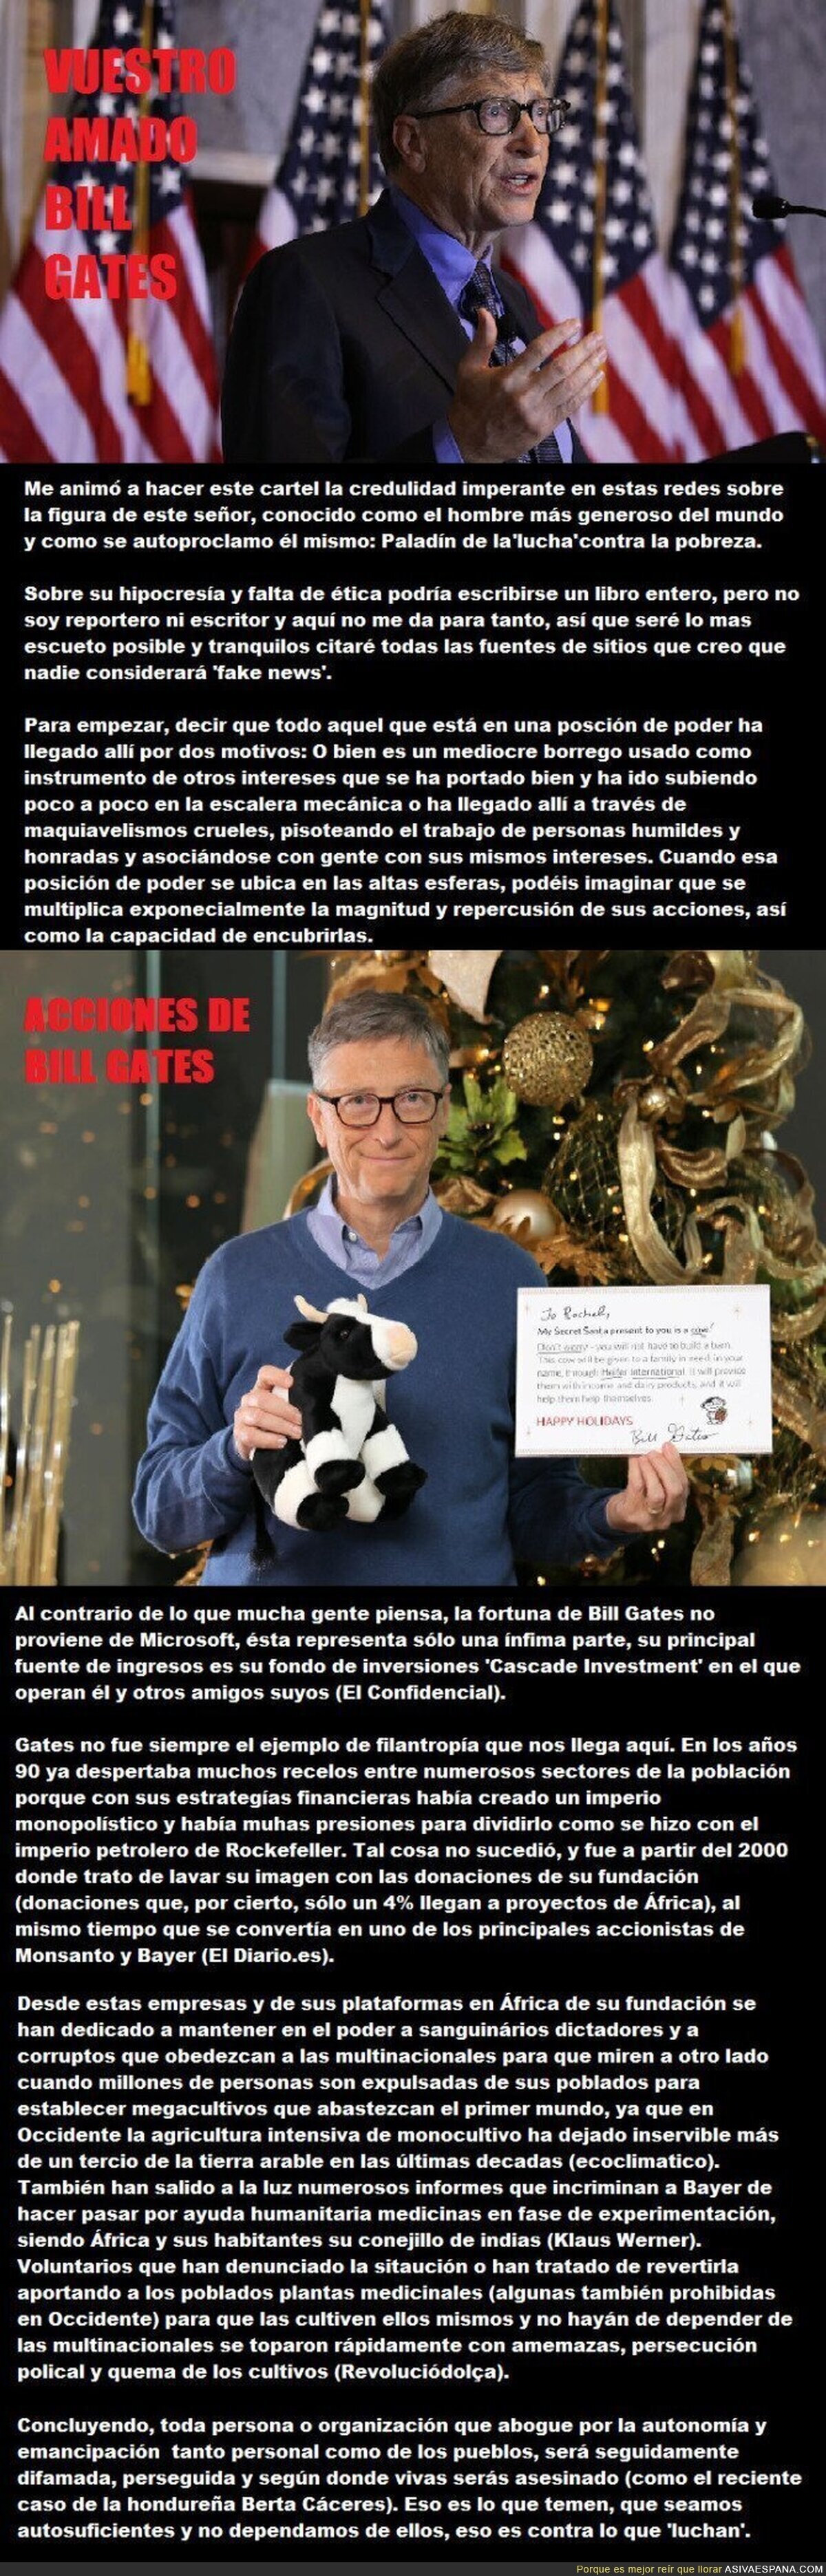 Vuestro amado Bill Gates